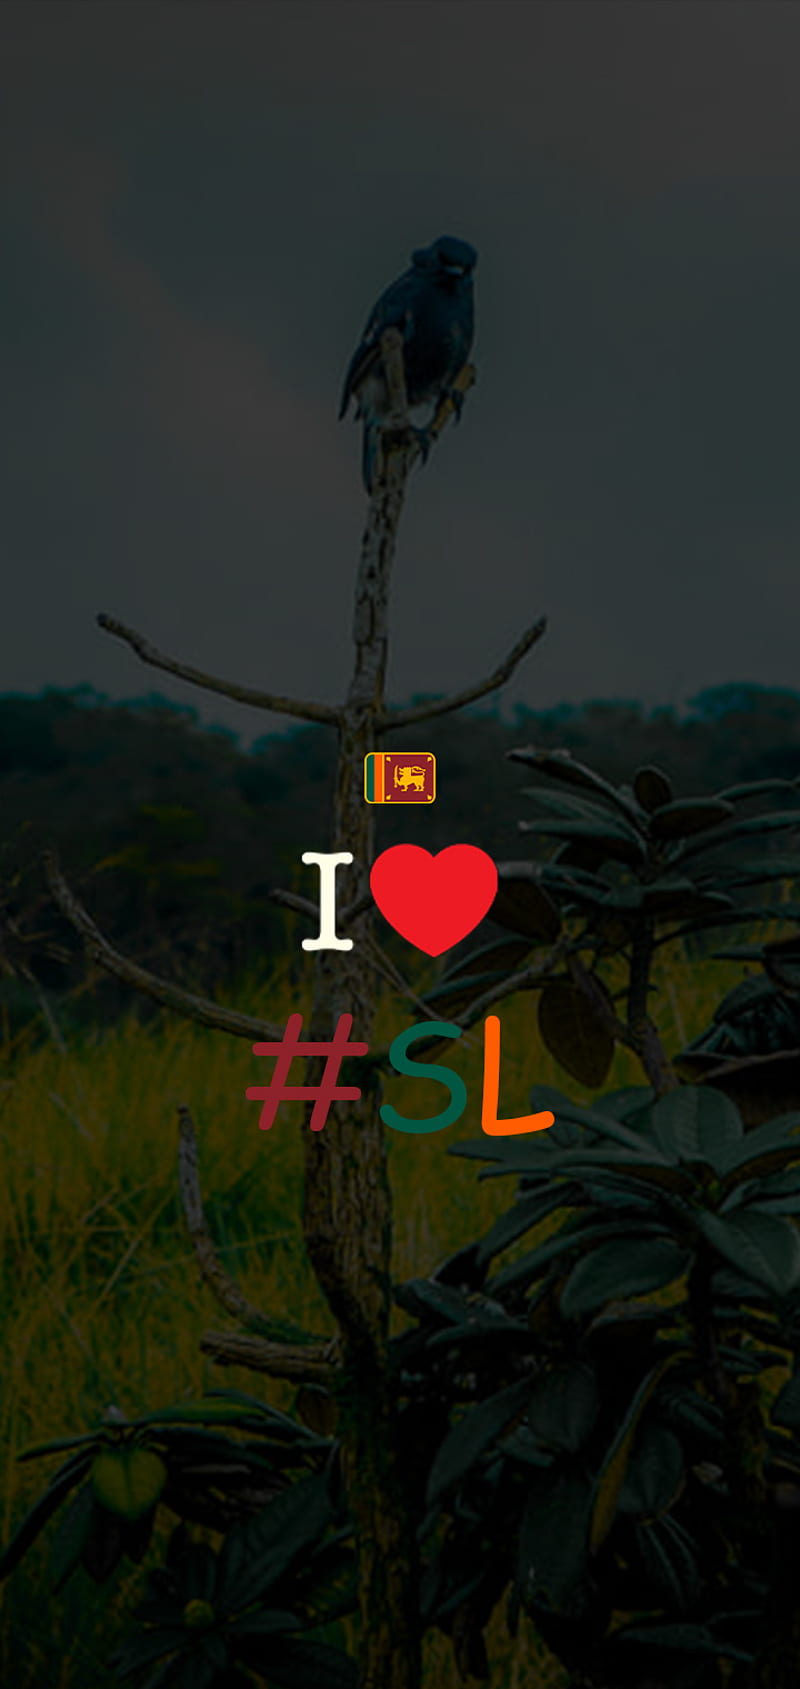 https://w0.peakpx.com/wallpaper/751/382/HD-wallpaper-sri-lankan-lover-love-country-sl-nature-sri-lanka.jpg